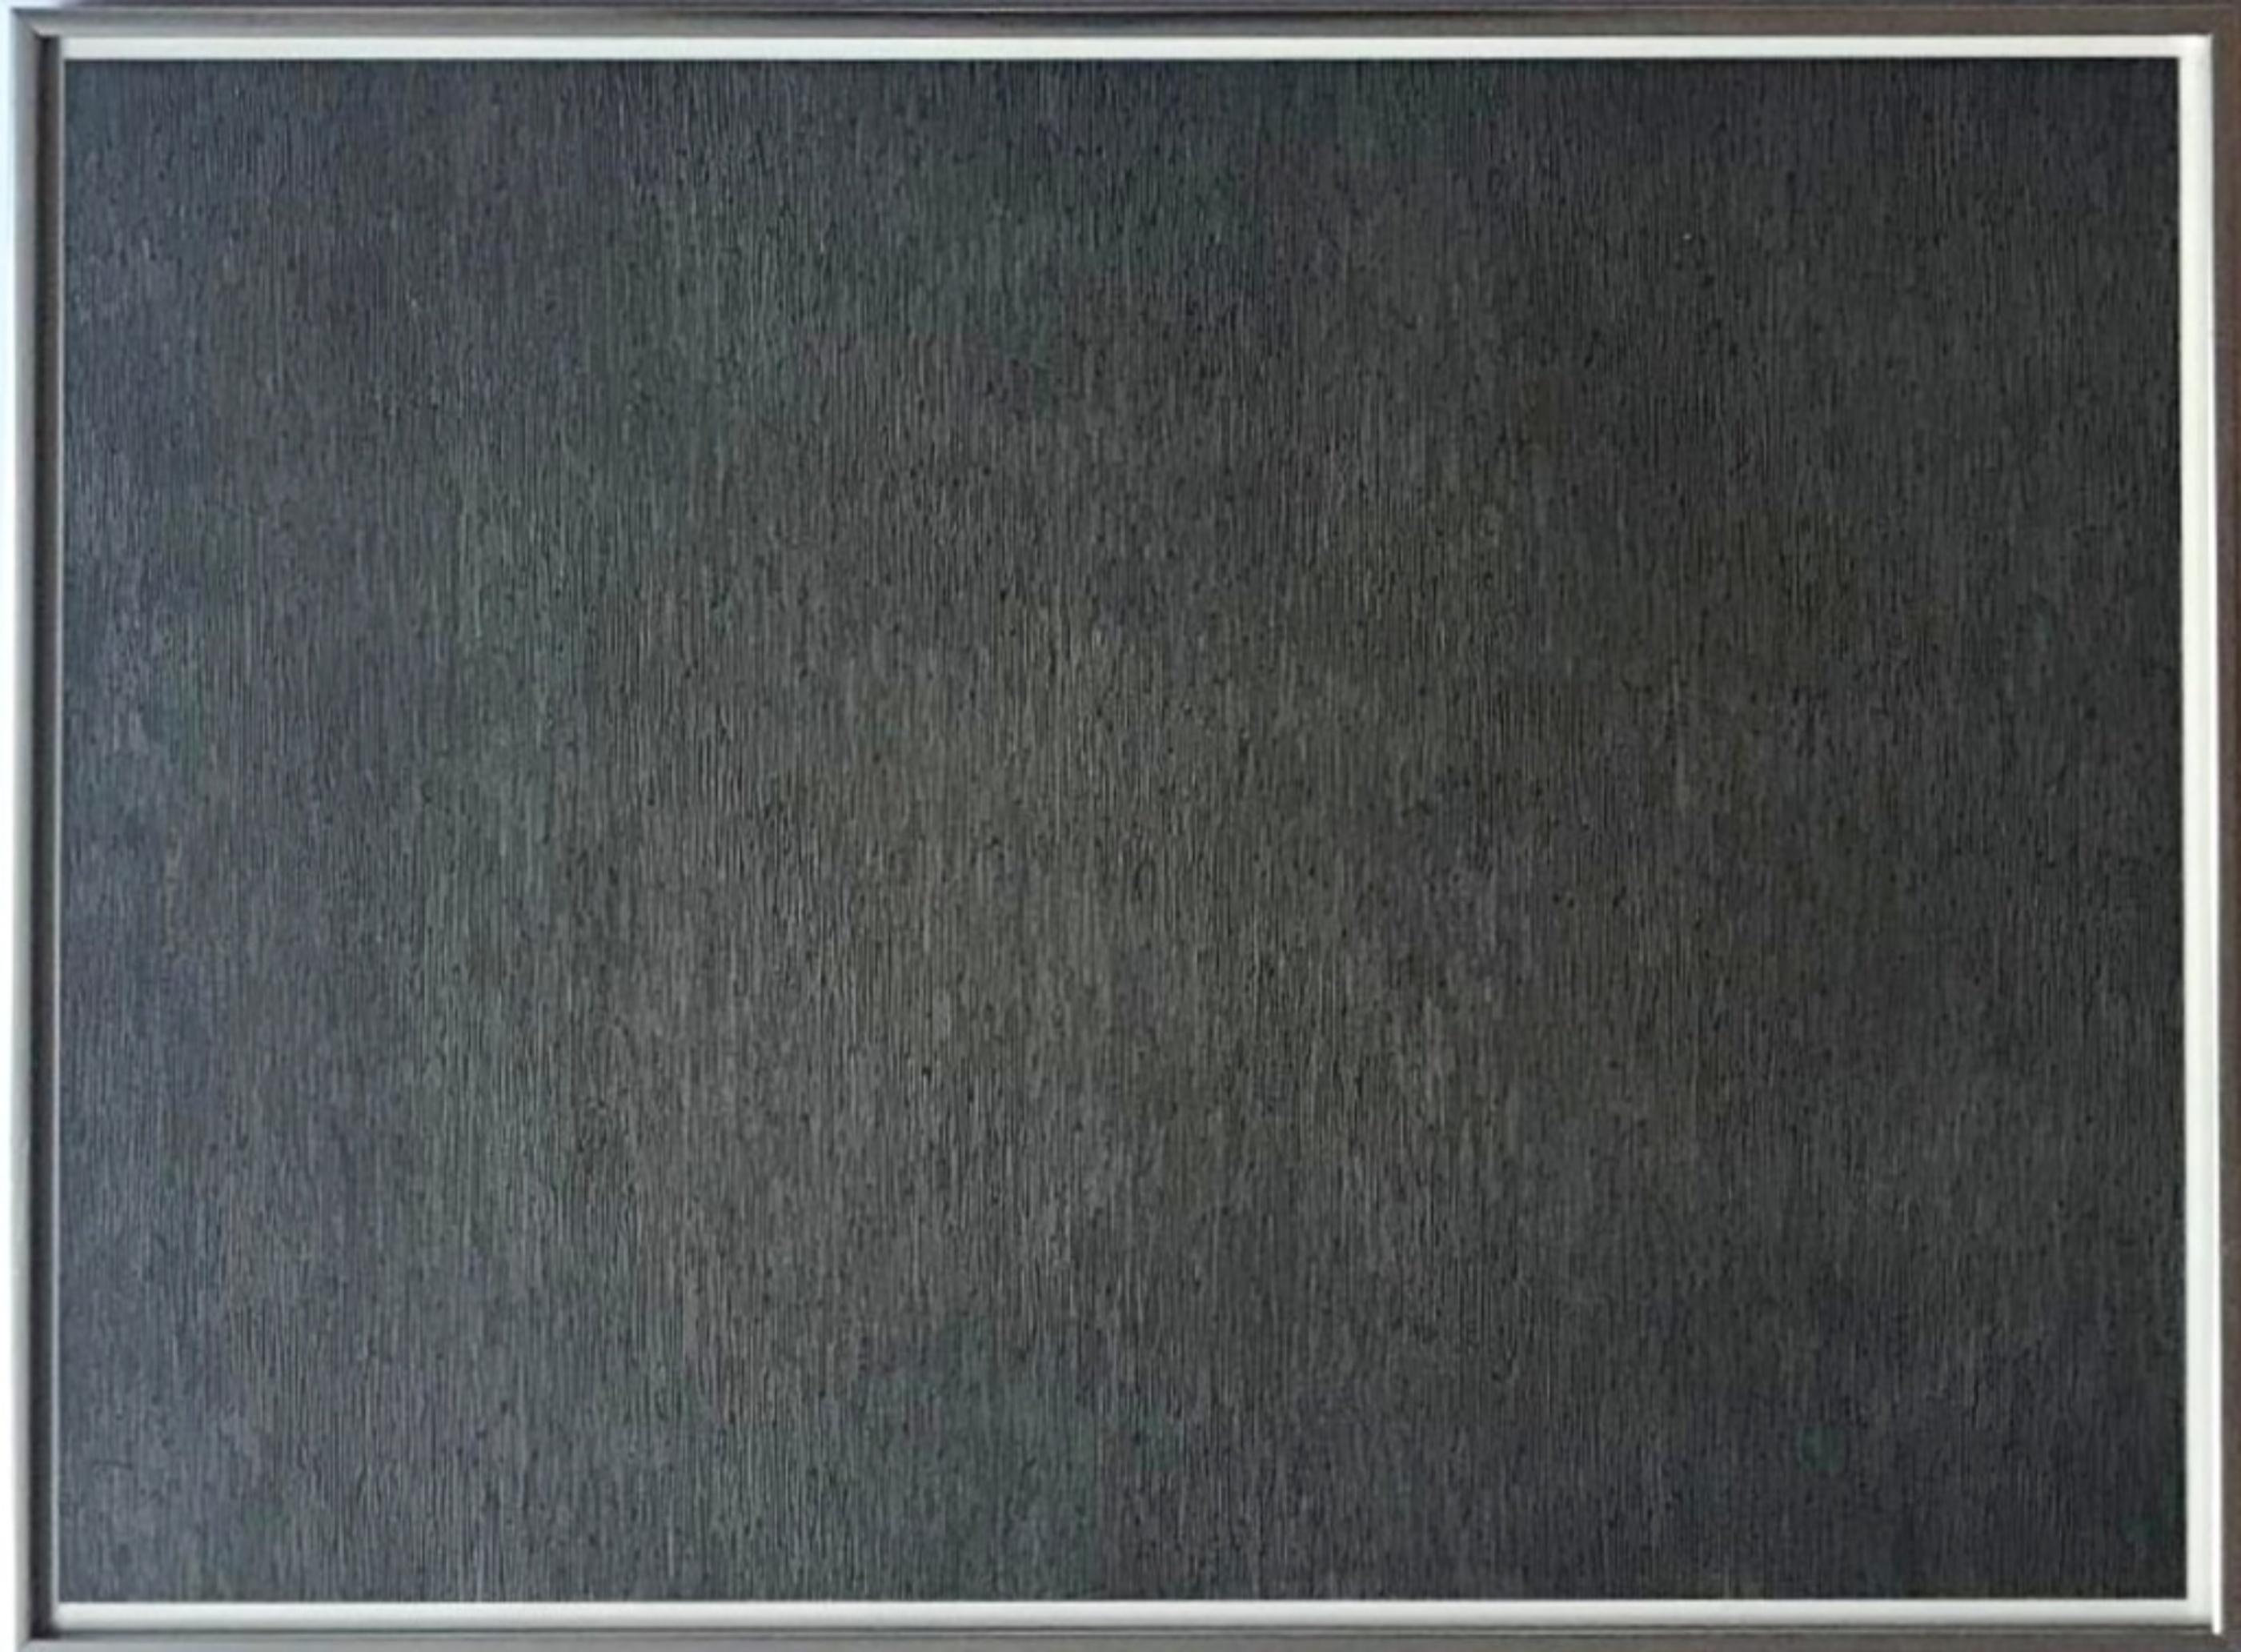 Black with White Lines, Vertical, Not Touching (Krakow 1970.07 ; 3. Kornfeld)